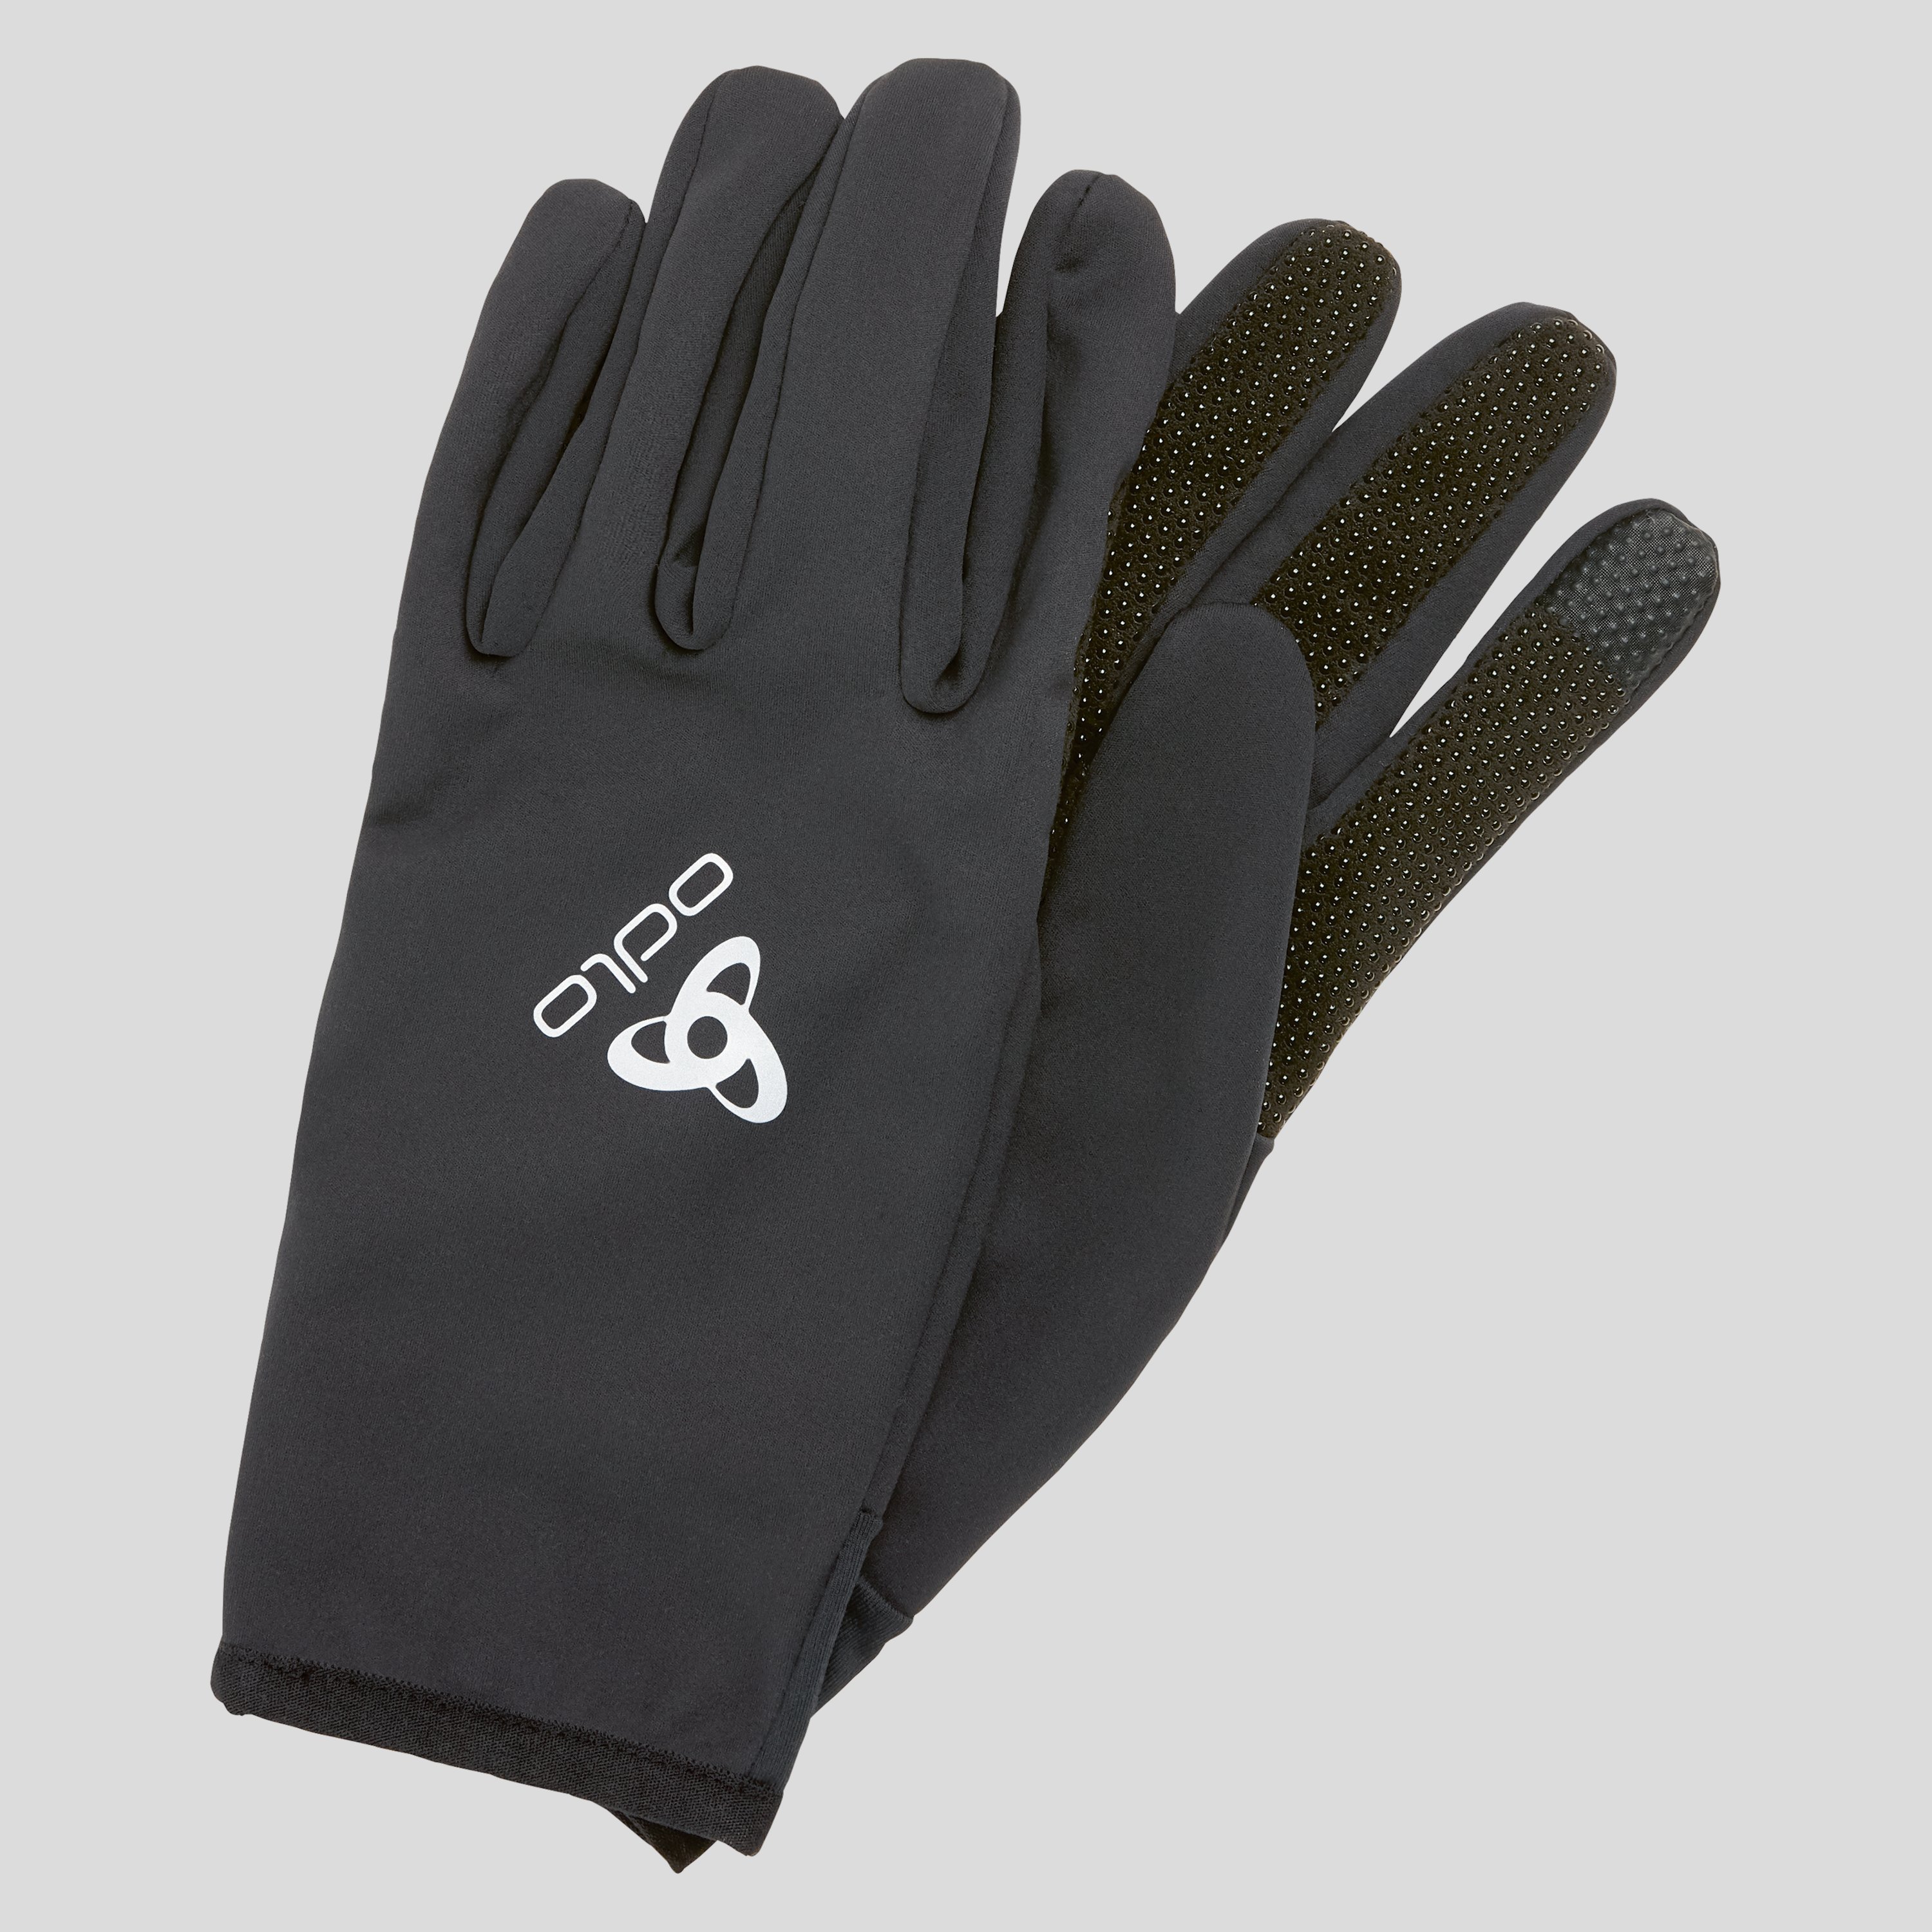 ODLO Ceramiwarm Grip Handschuhe, XS, schwarz